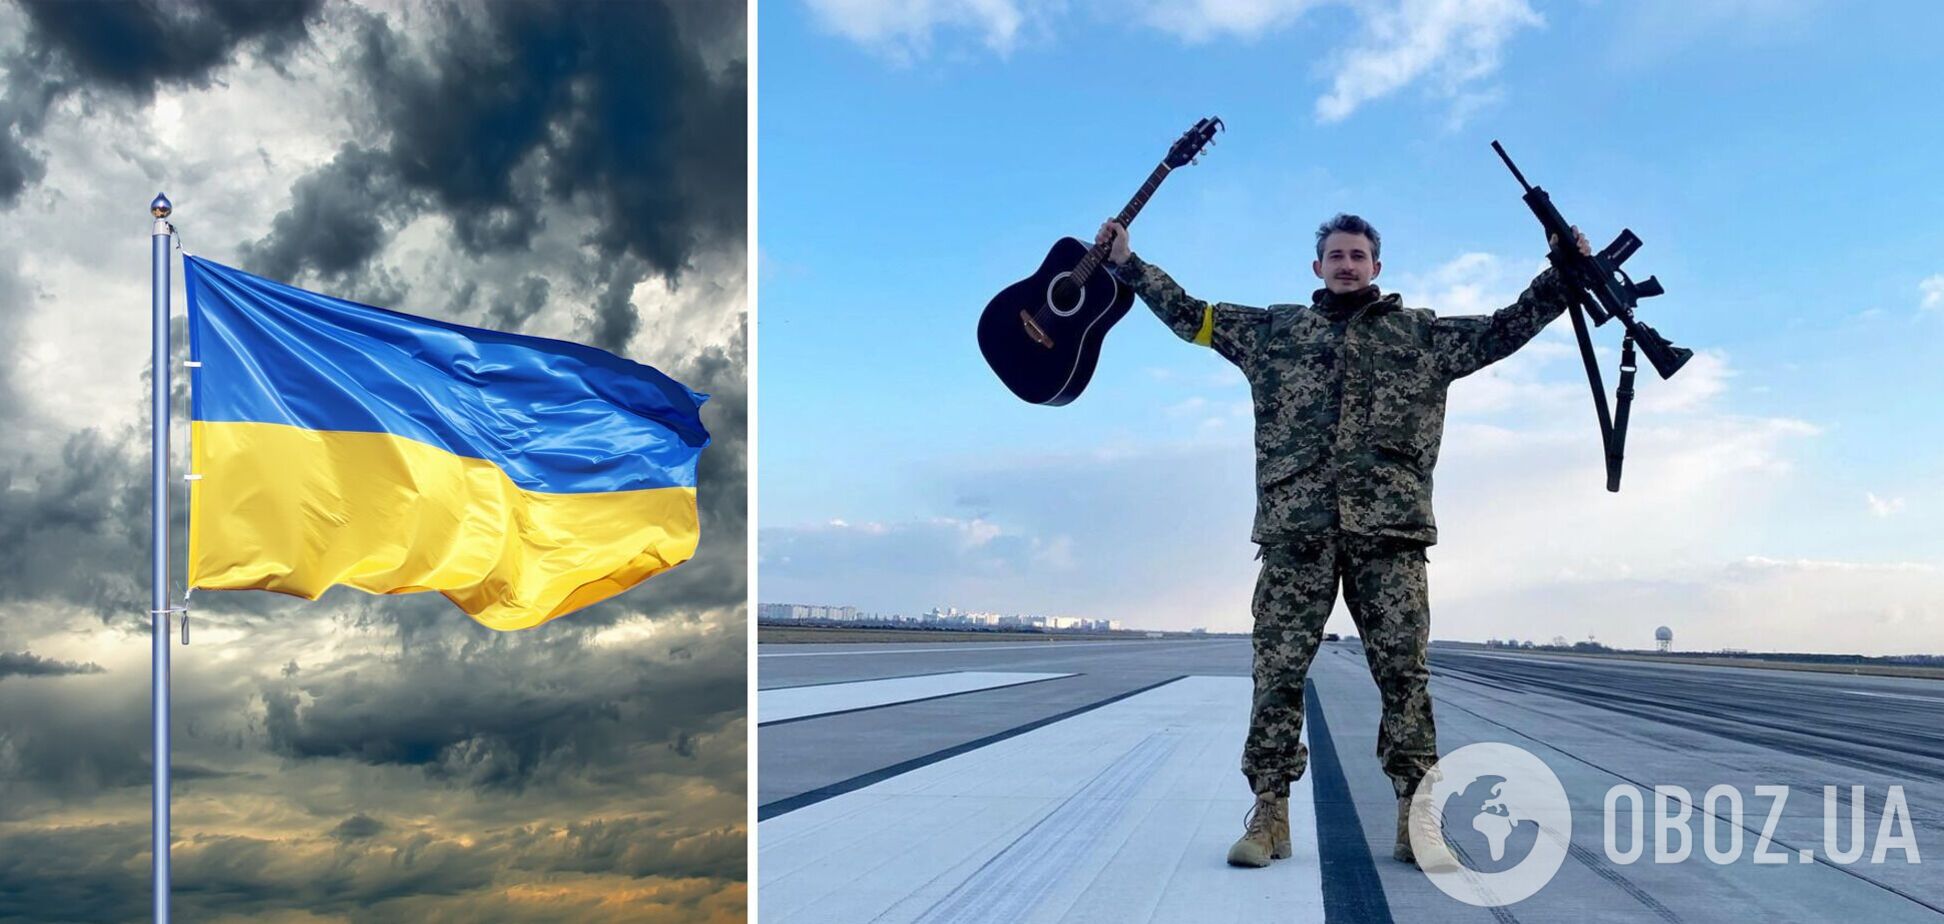 Про демона і перемогу України. Коля Сєрга презентував свою першу українську пісню